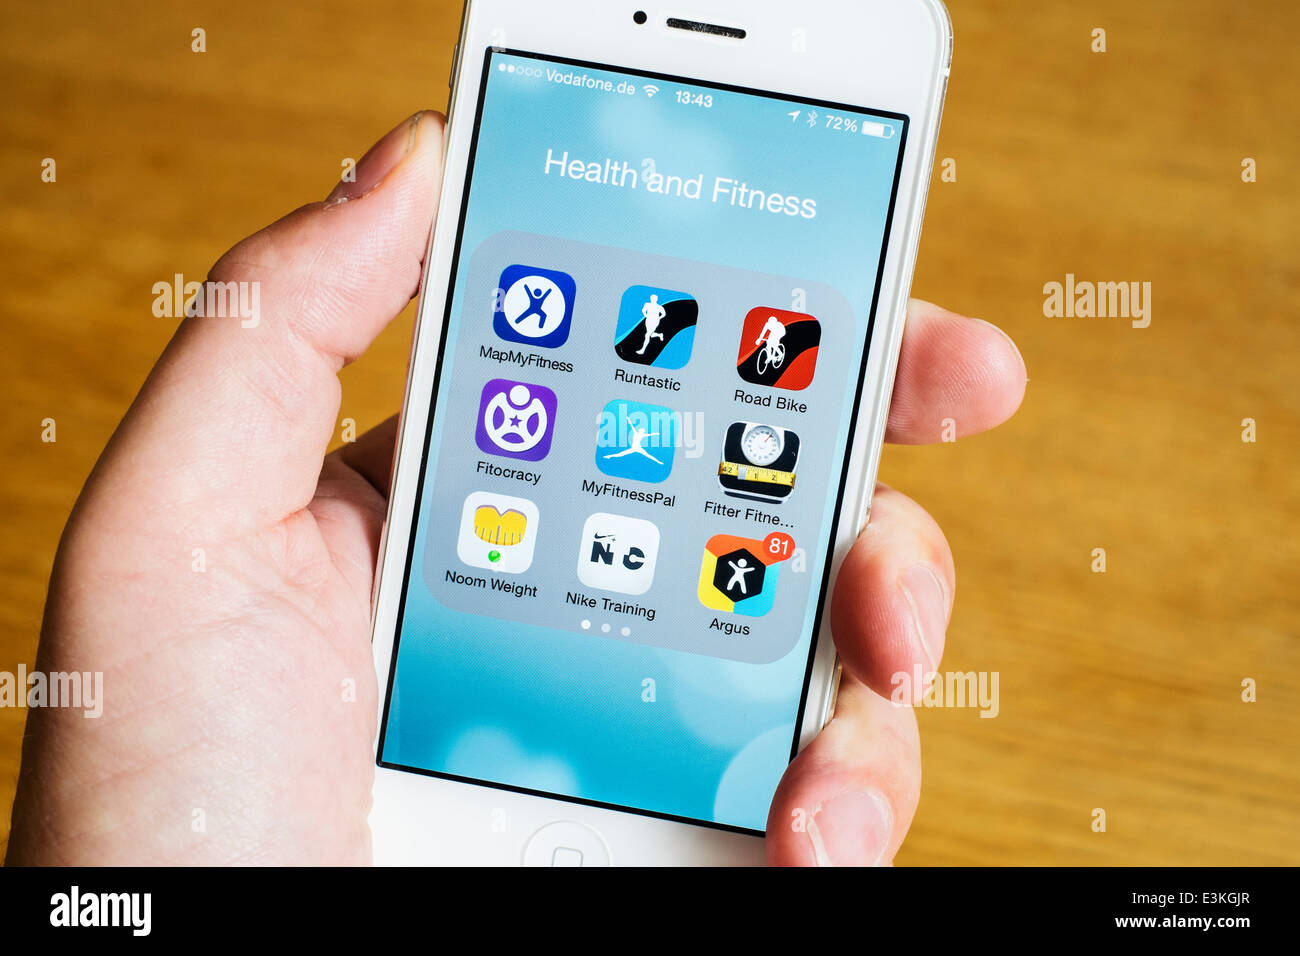 Detalle de muchos centros de salud, deporte y fitness iPhone Apps en un teléfono inteligente. Foto de stock